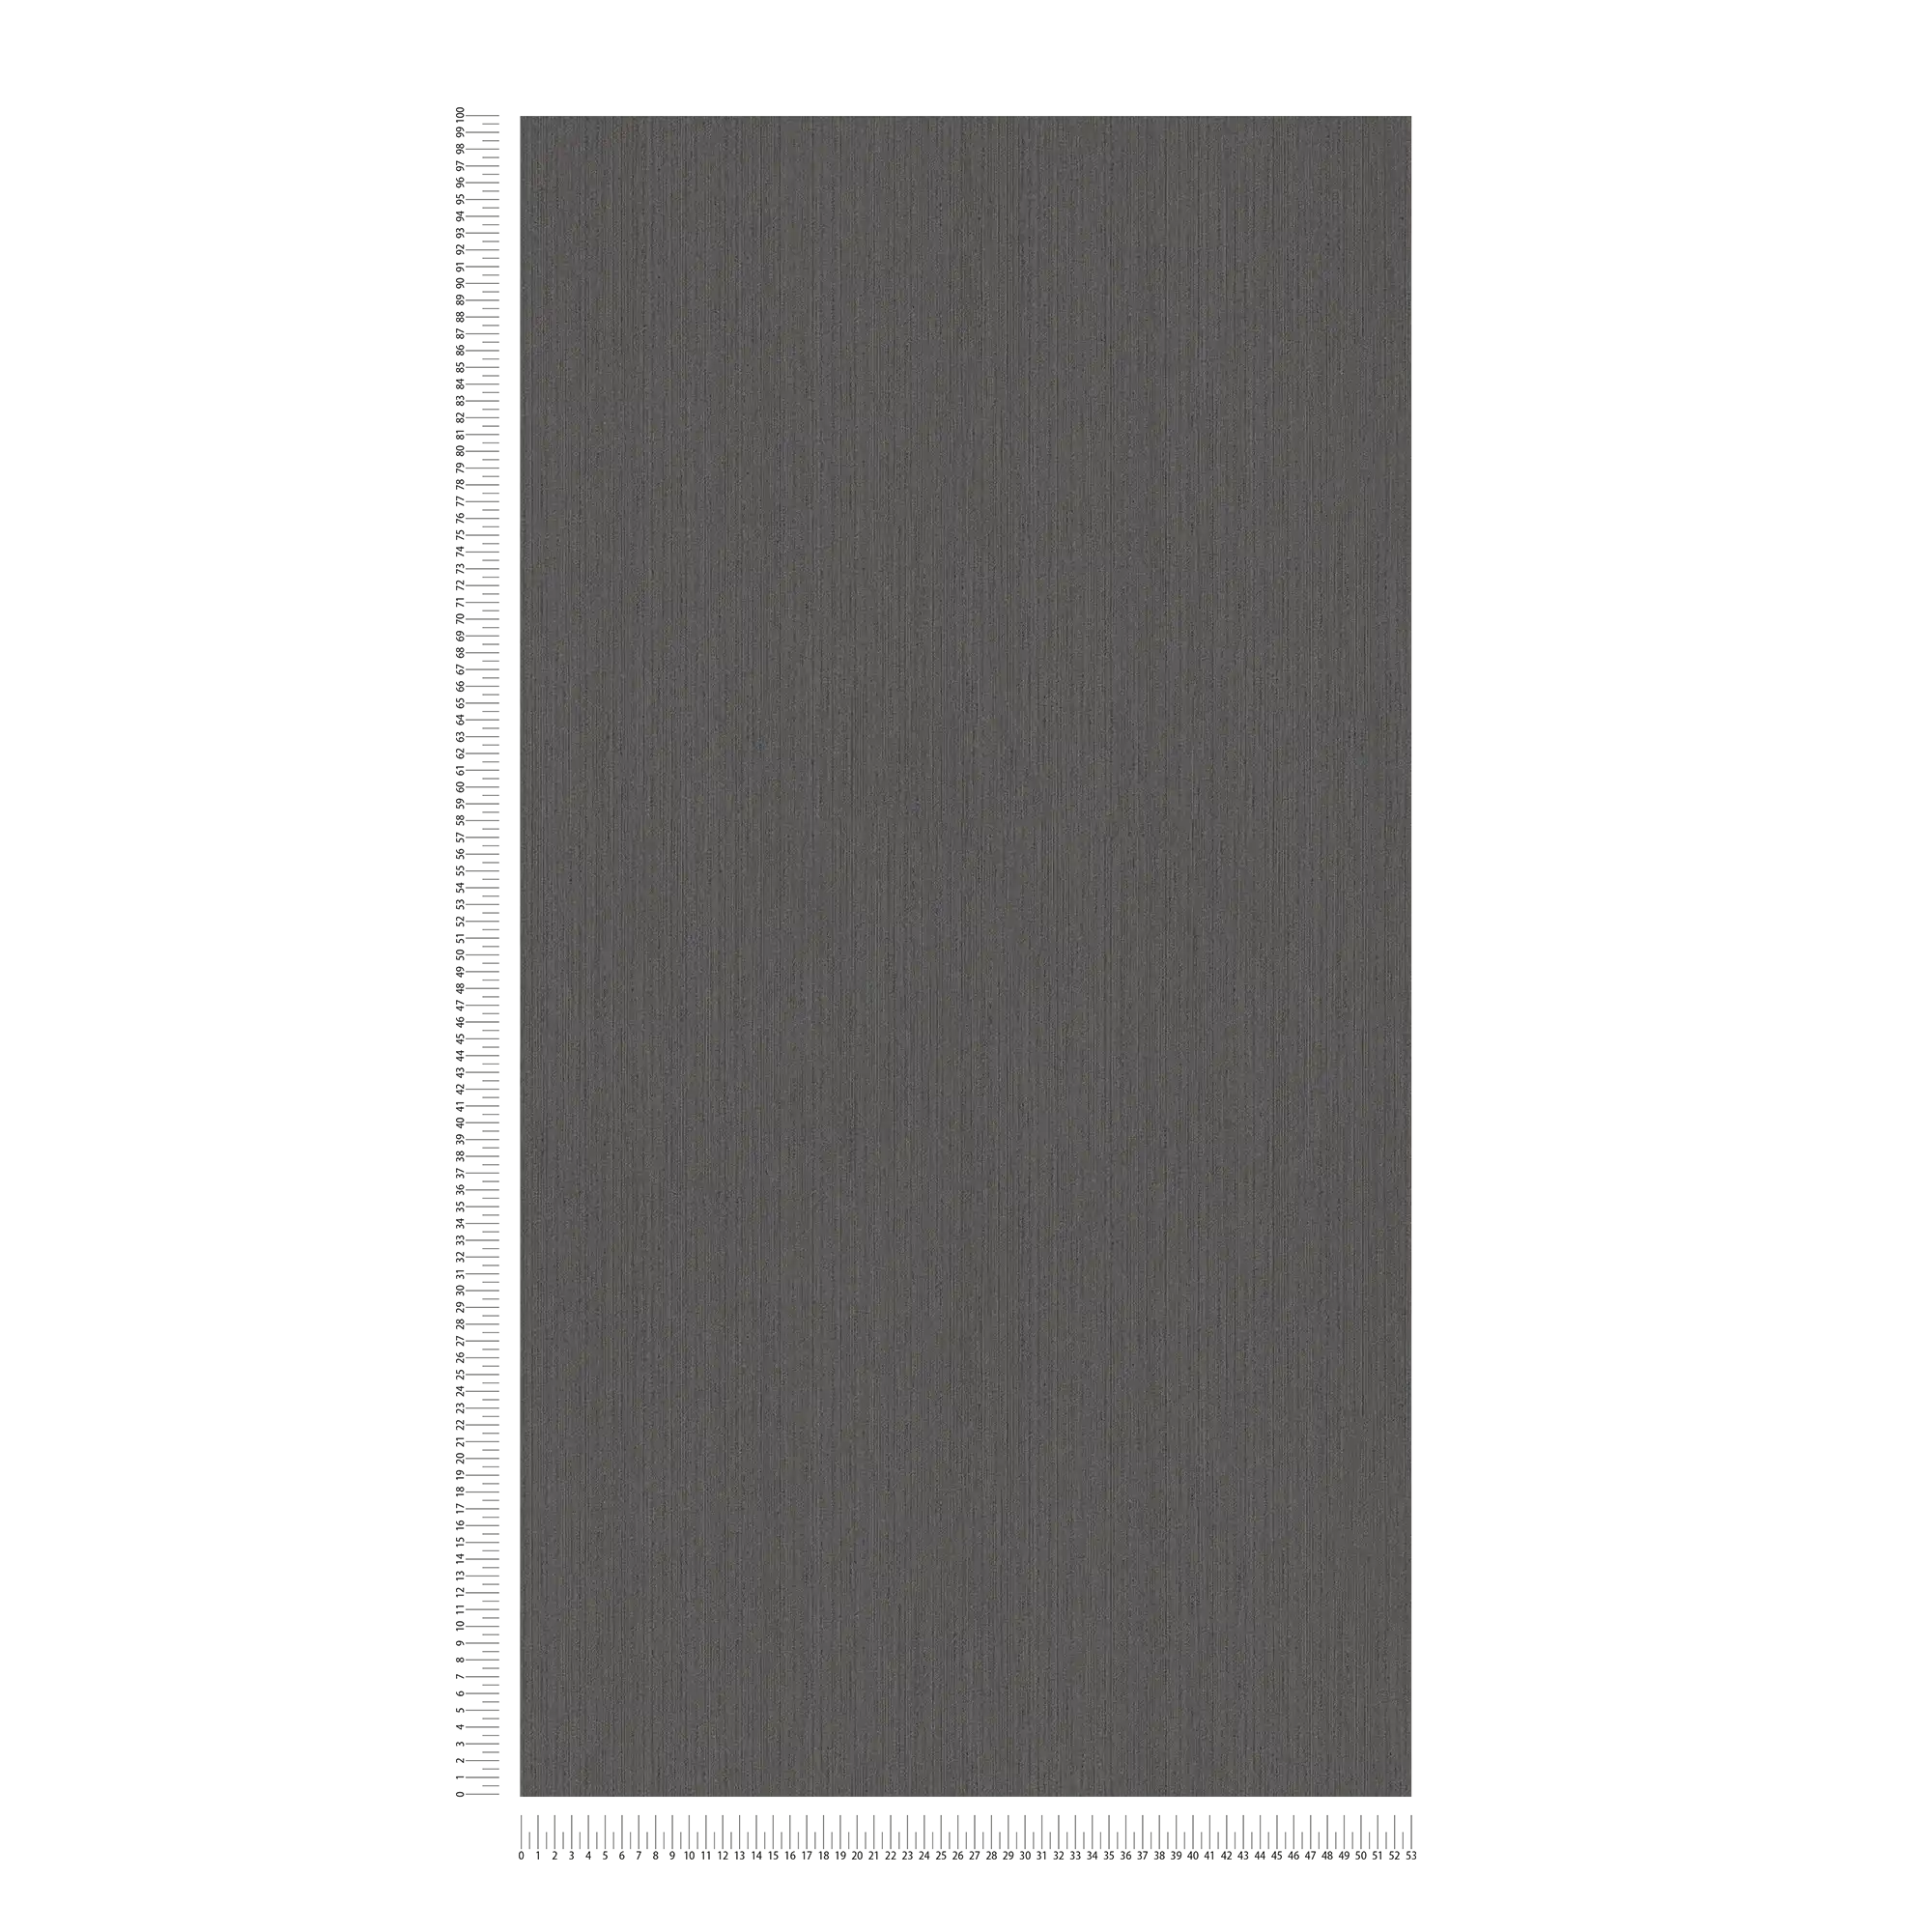             Papier peint gris graphite avec effet structuré & finition satinée
        